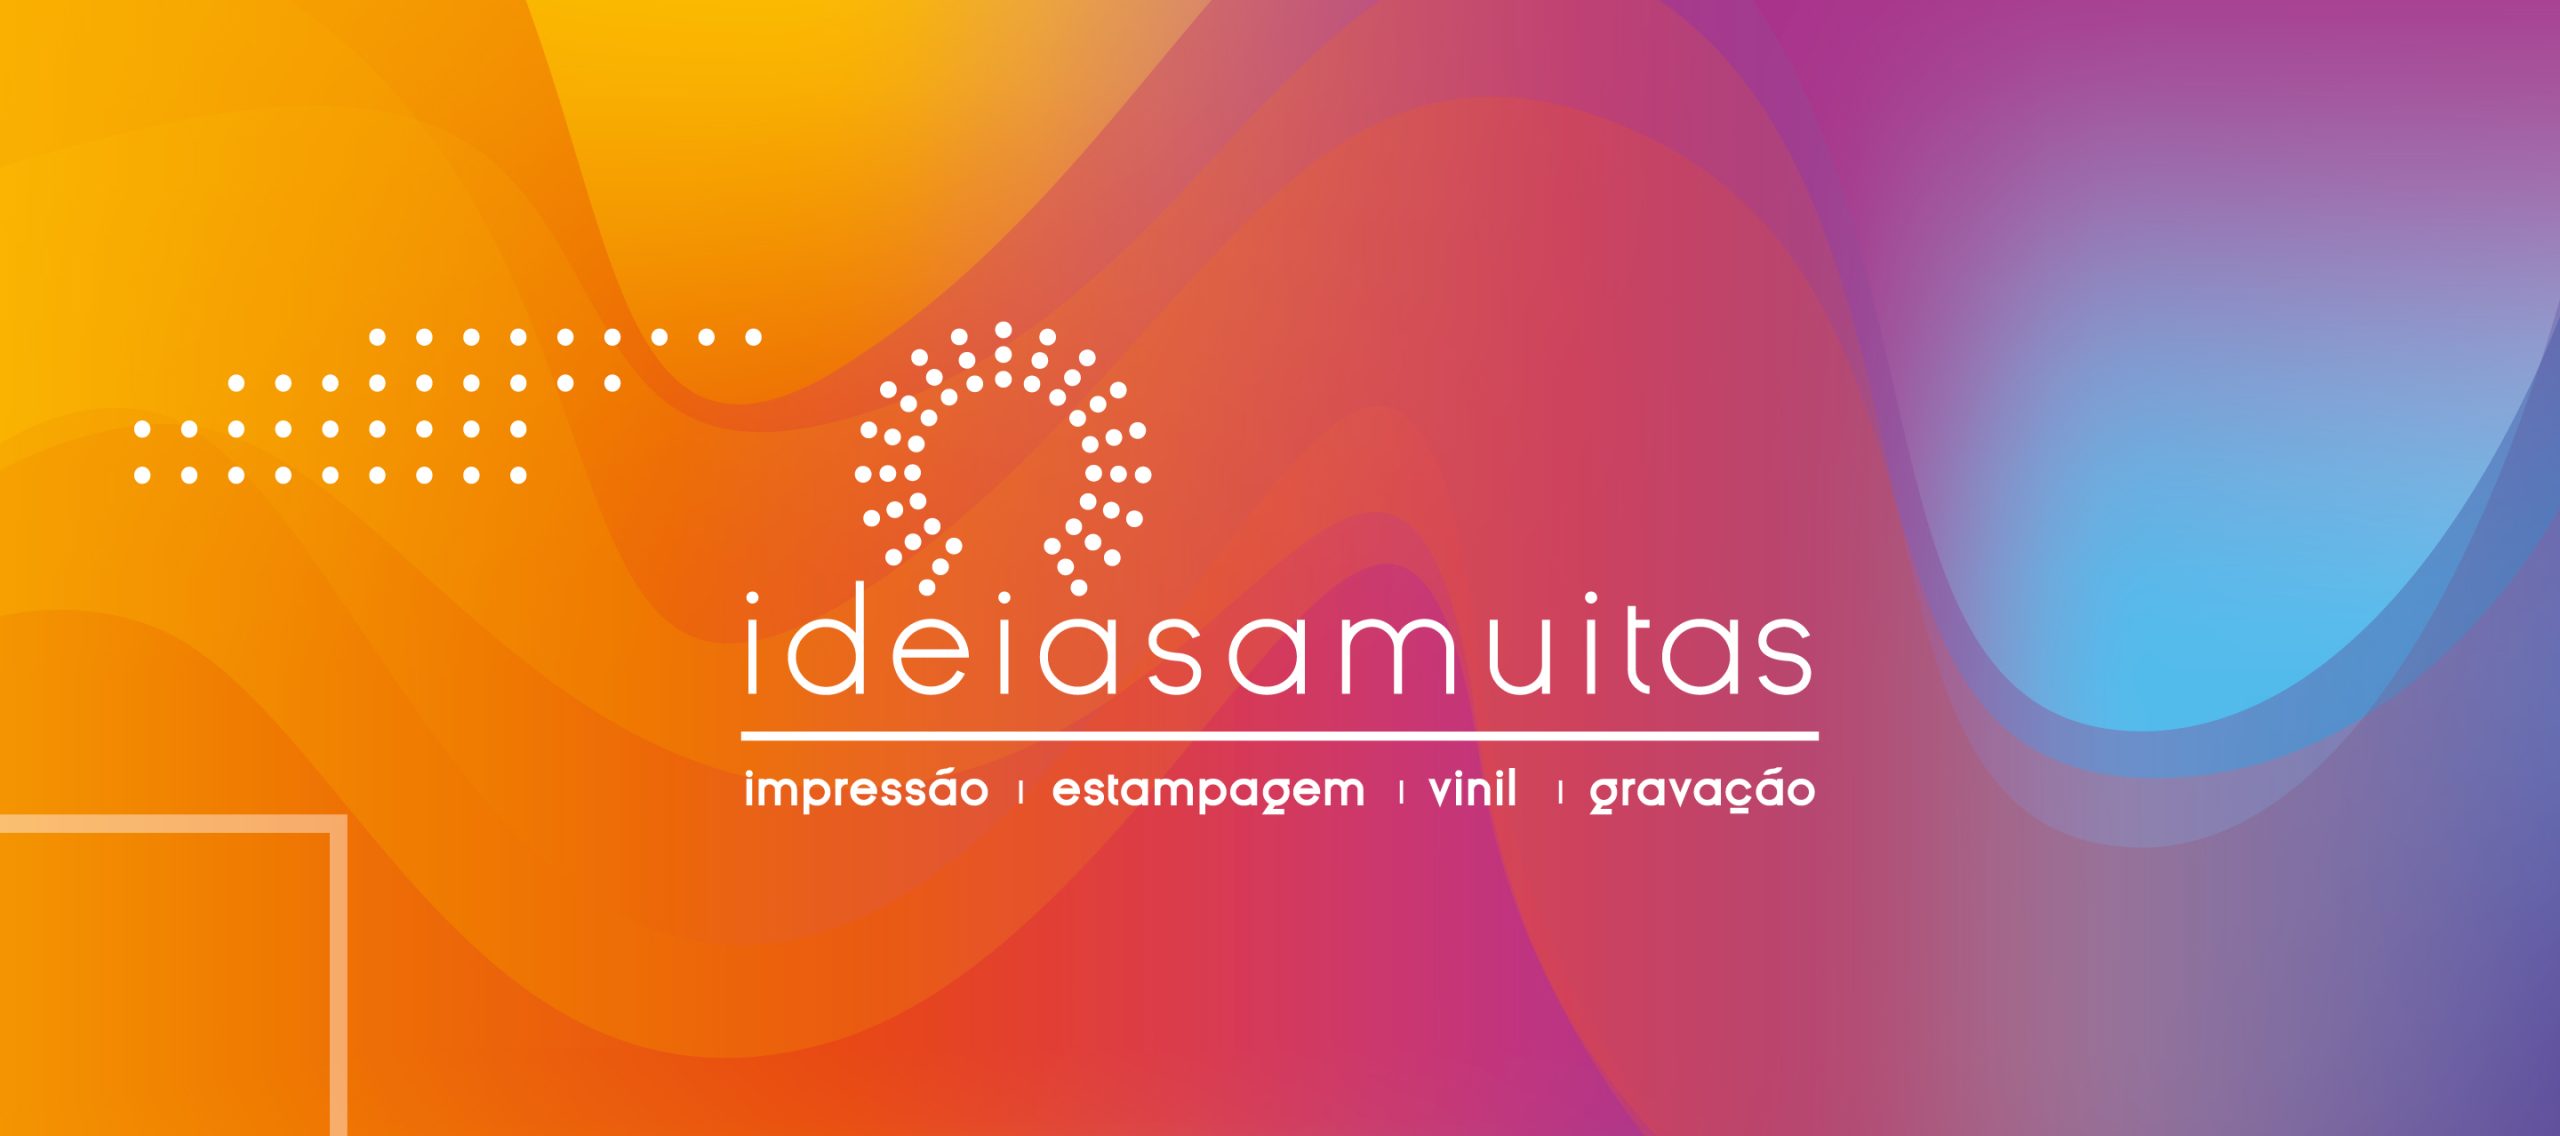 logotipo Ideiasamuitas 1